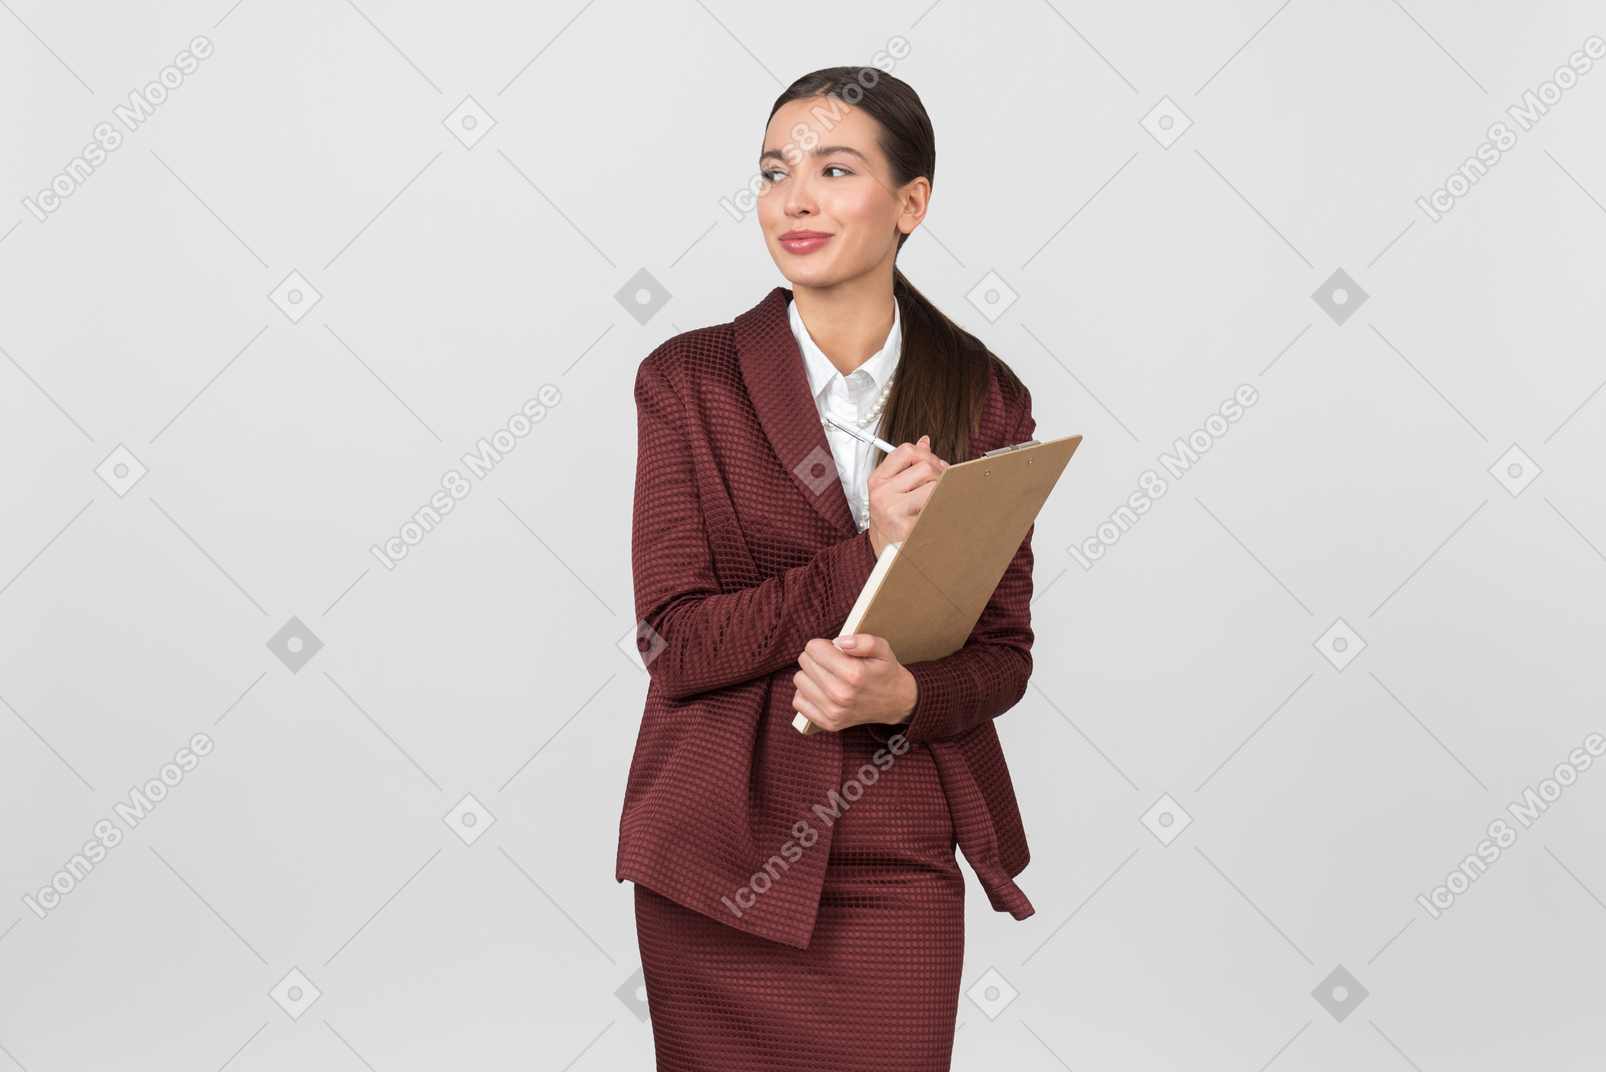 Attraente donna vestita formalmente prendendo appunti su una lavagna per appunti